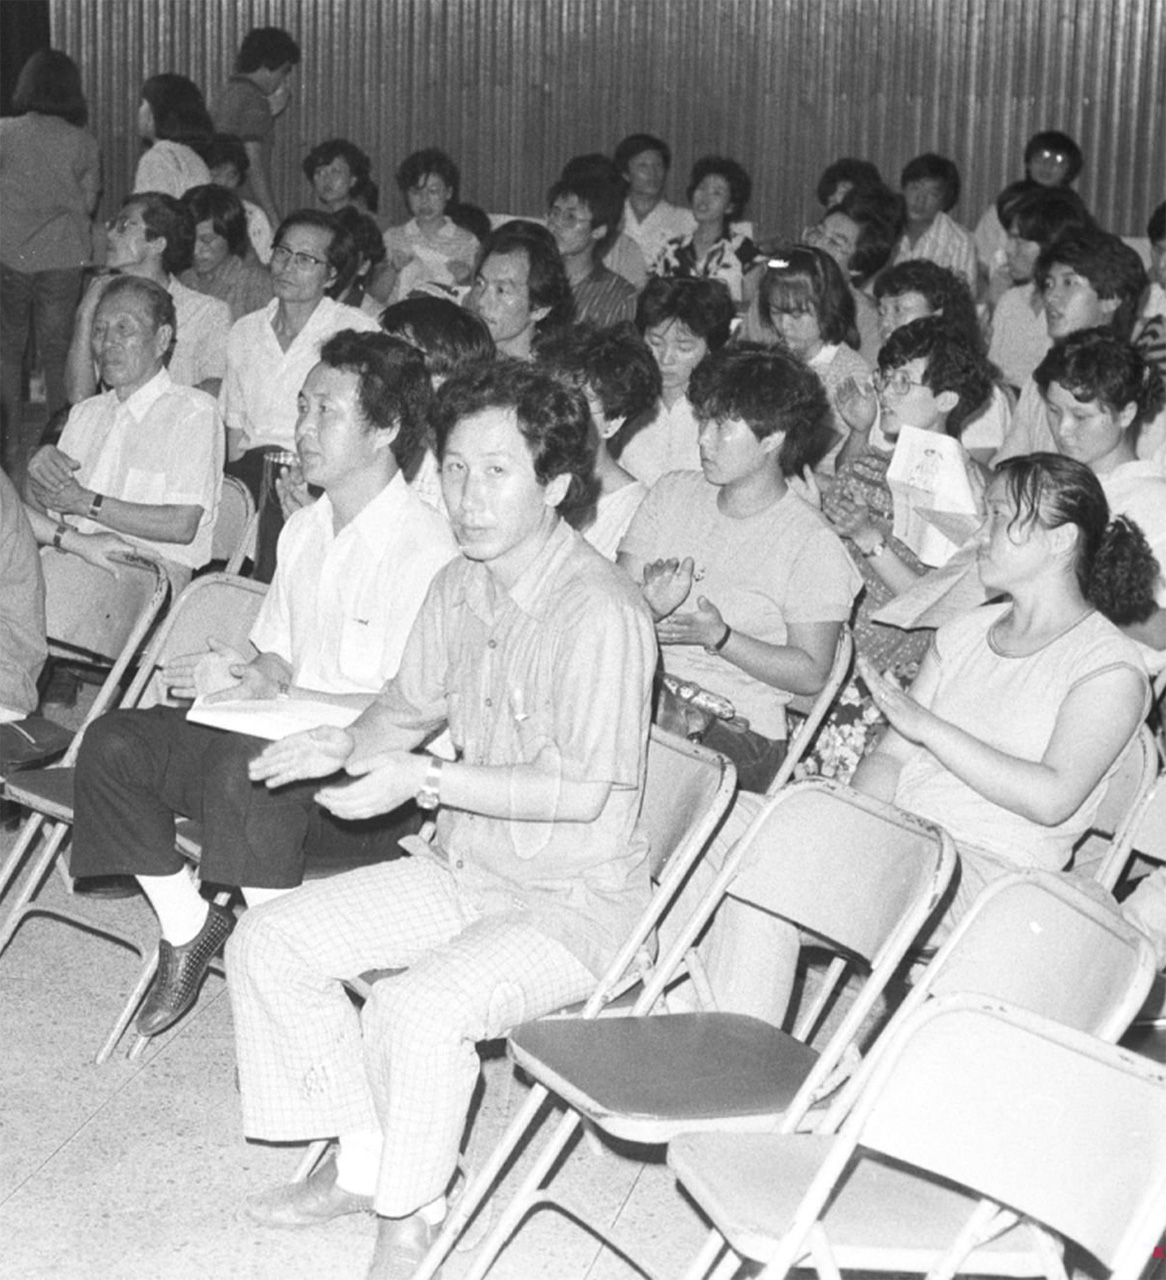  1984년 8월, 흥사단에서 열린 ‘전두환 방일 반대’를 겸한 민청련 8·15 집회에서 나란히 자리한 최민화와 김근태. 김근태 바로 뒷자리는 부인  인재근.